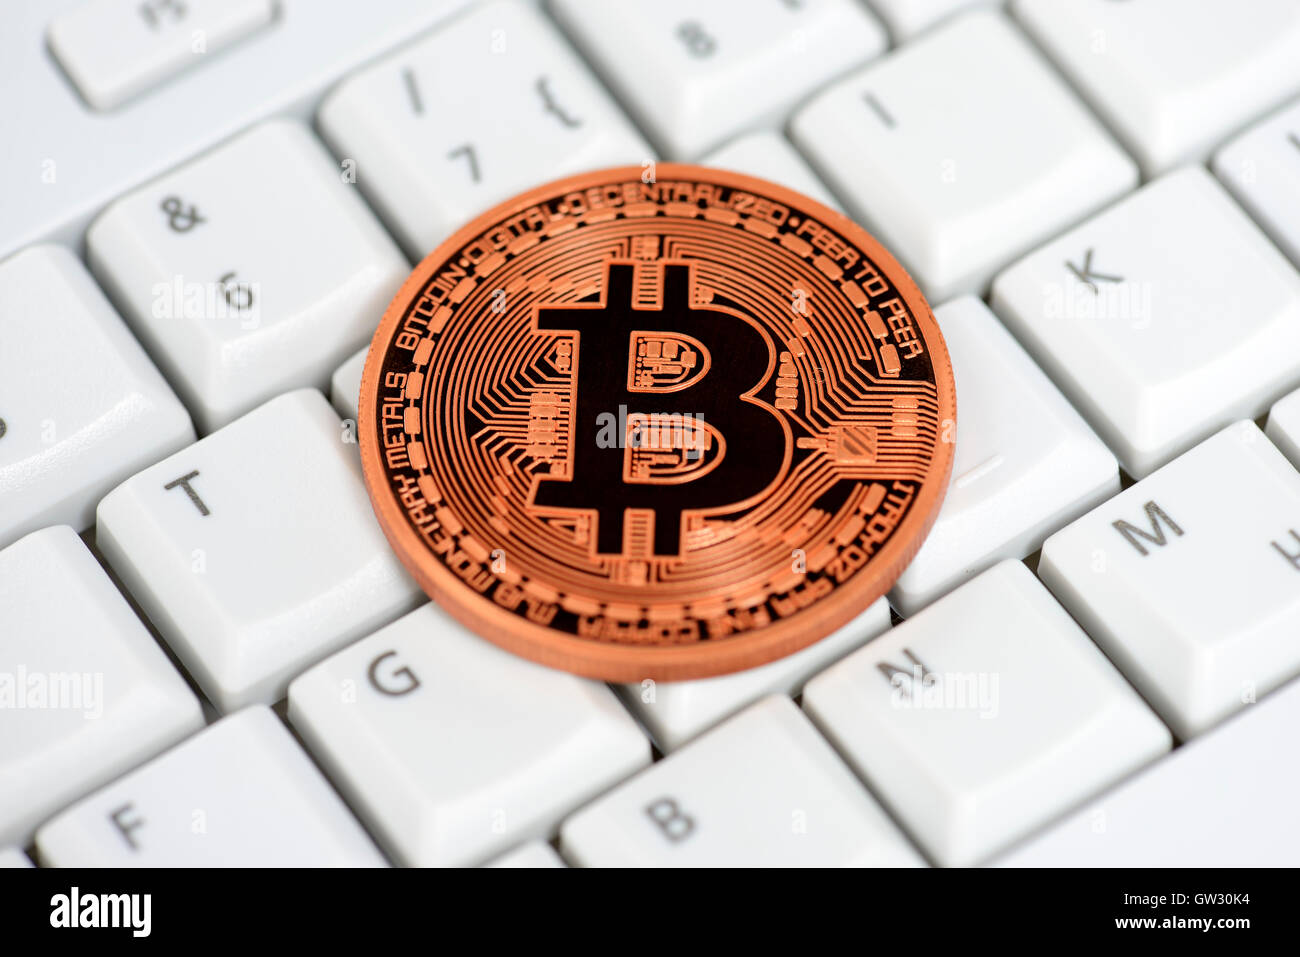 Sur le clavier de l'ordinateur, Bitcoin monnaie virtuelle Banque D'Images